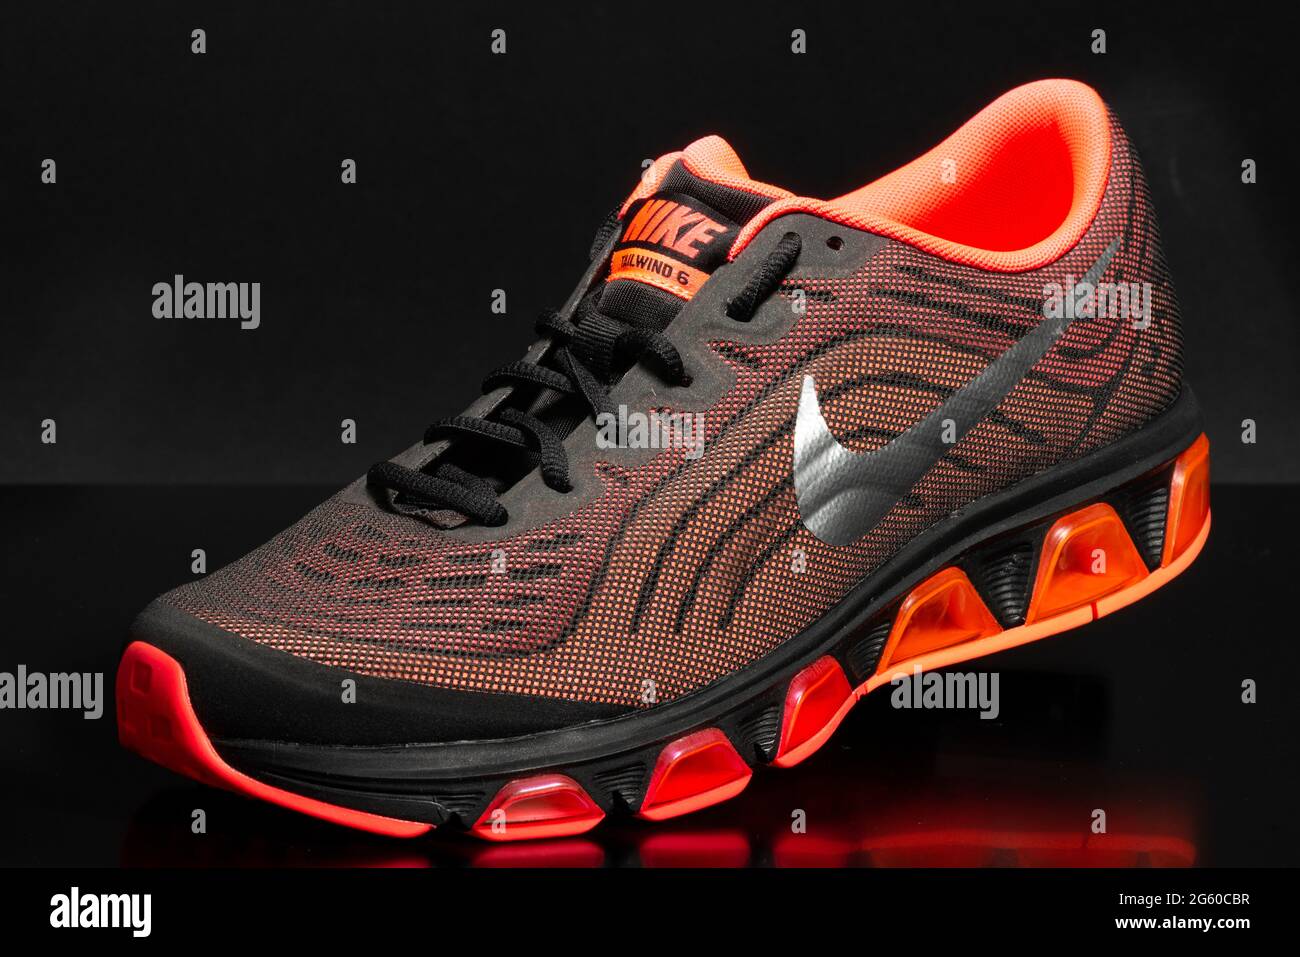 Chaussures Nike Air Max Tailwind 6 multi-couleurs pour Homme à partir de  2013 sur fond noir Photo Stock - Alamy